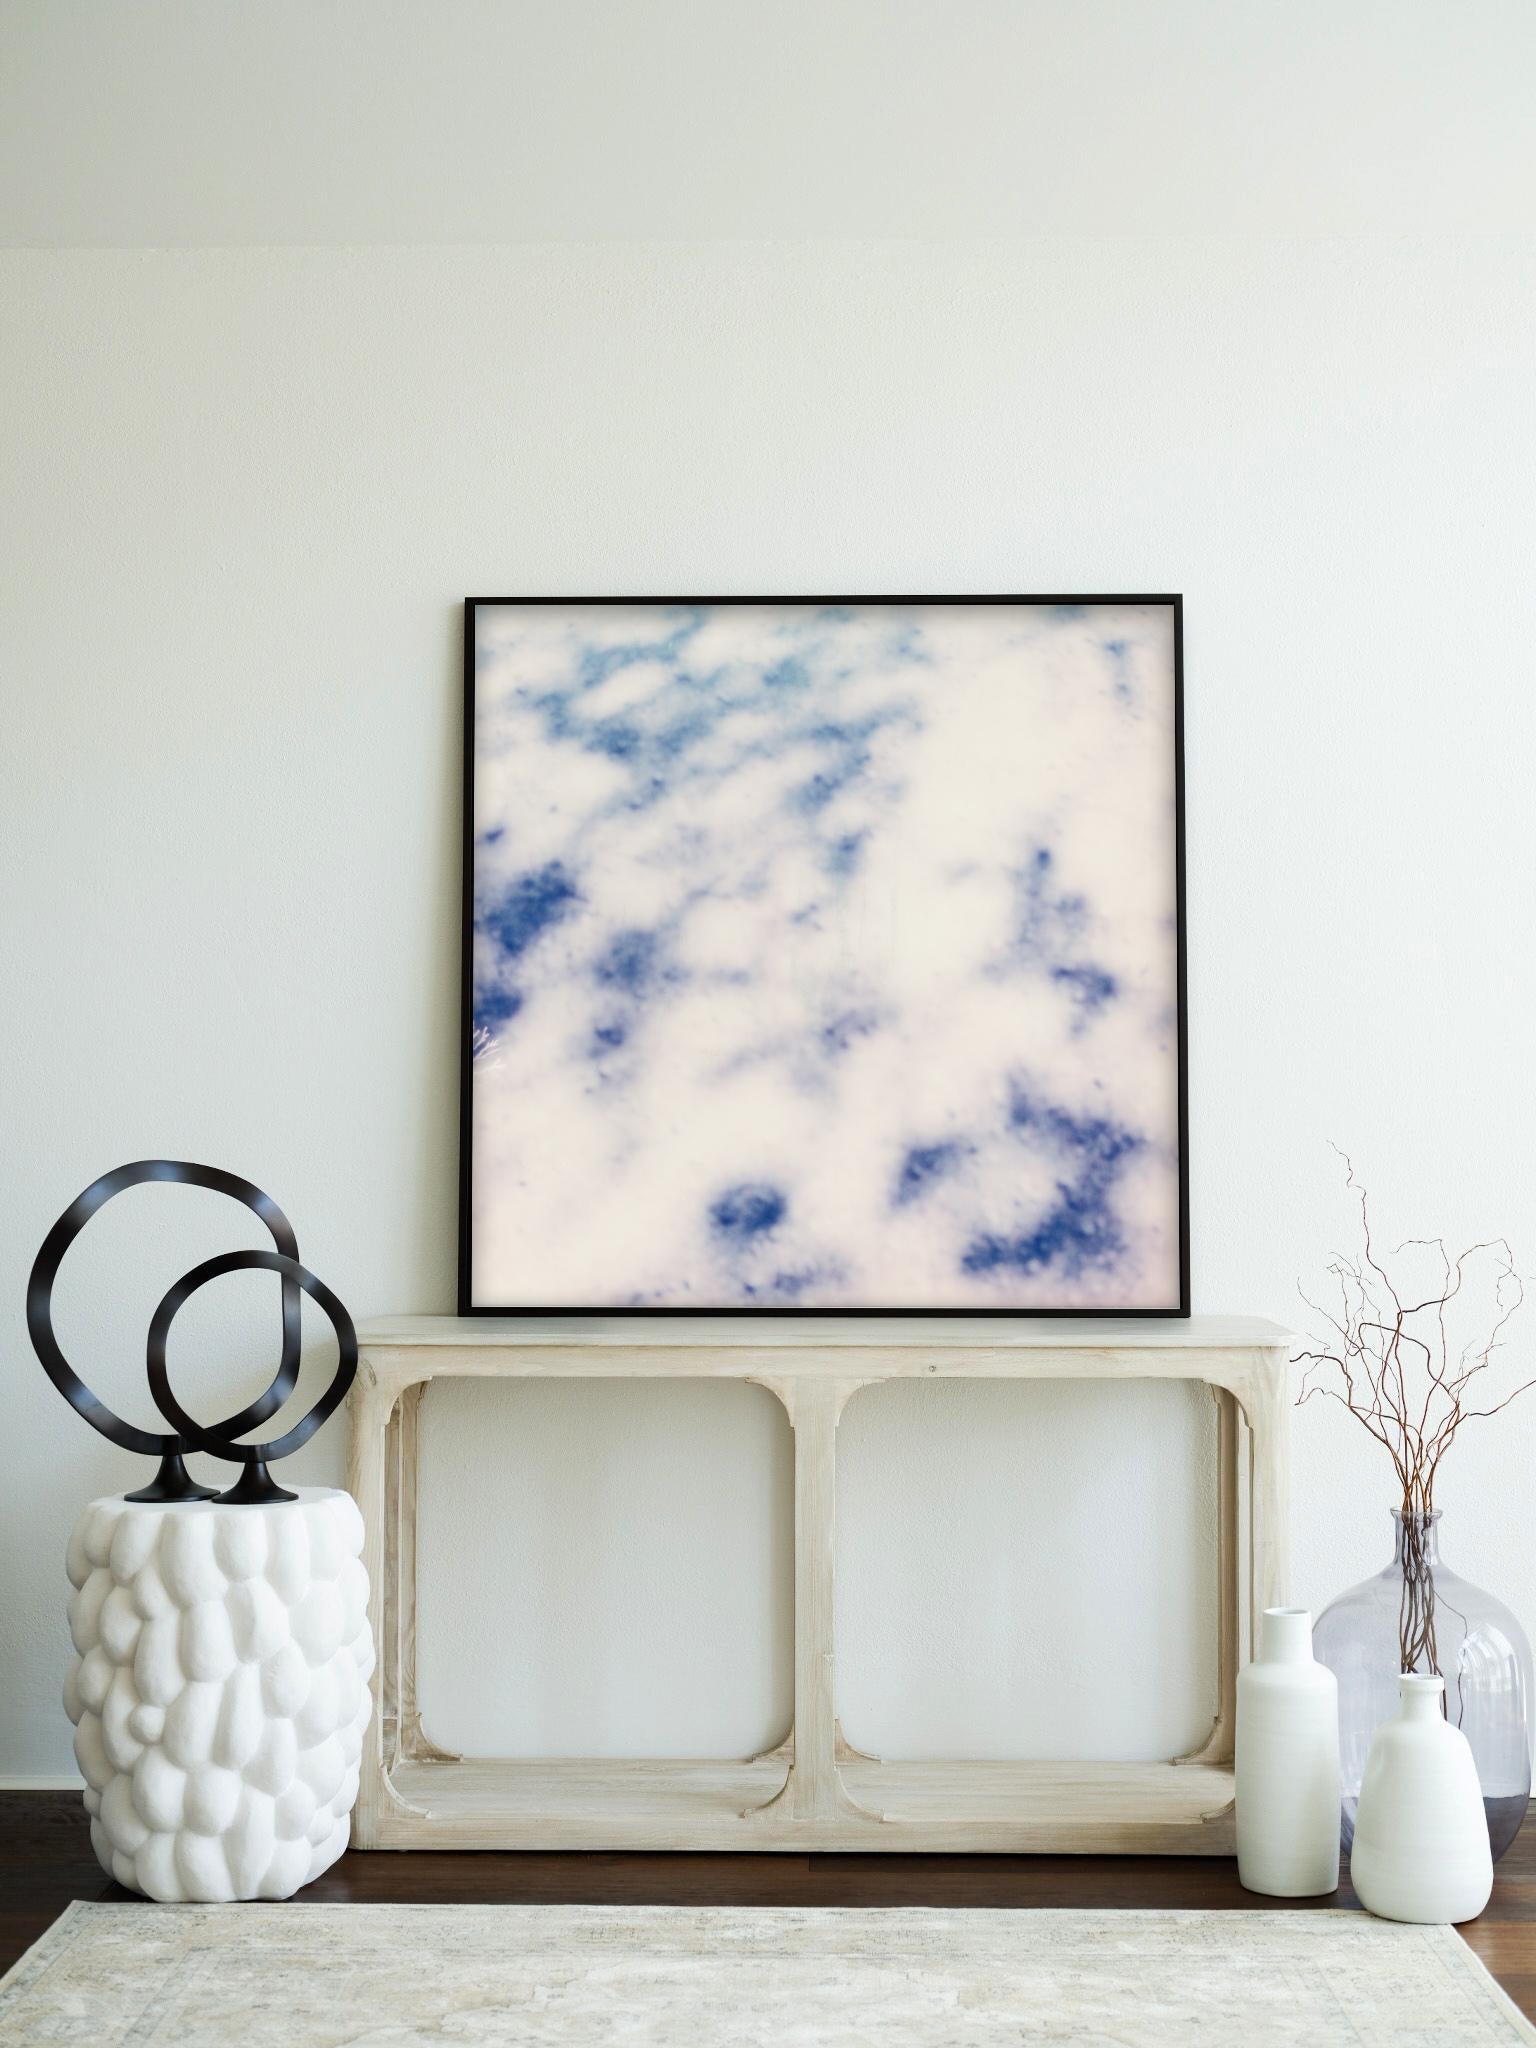 Étude nuageux I - Impression photographique contemporaine du 21e siècle encadrée - Contemporain Print par Pia Clodi